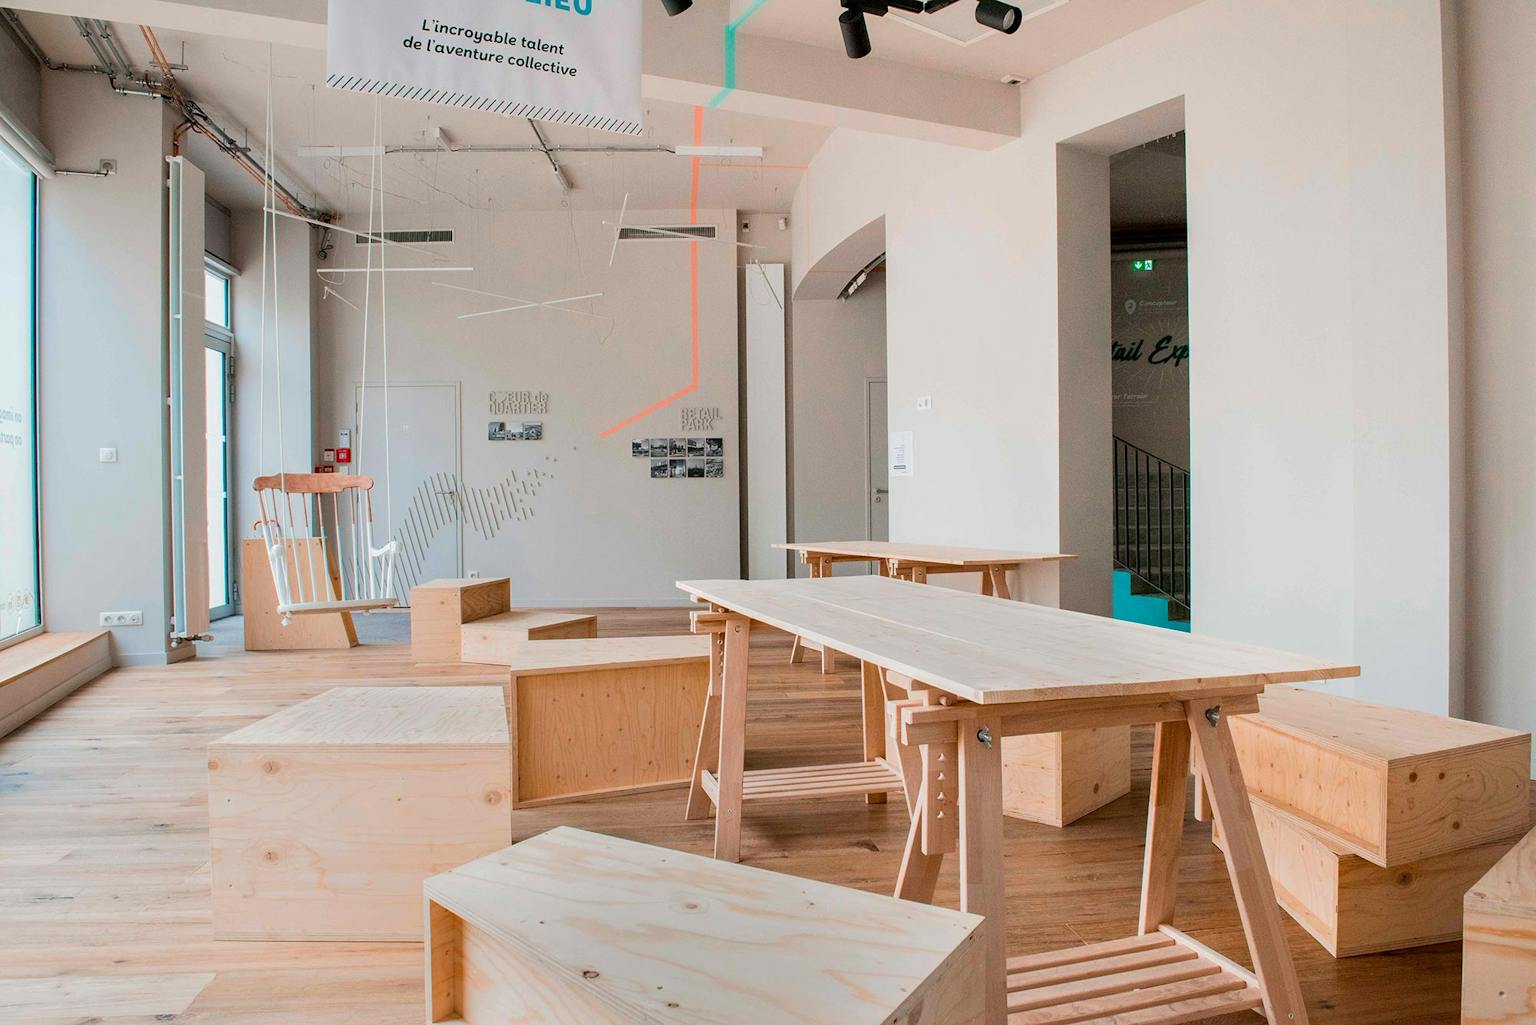 L'accueil du groupe "Chessé" aménagé grâce au mobilier de bois conçu dans les ateliers de l'agence de design graphique "Studio Katra".